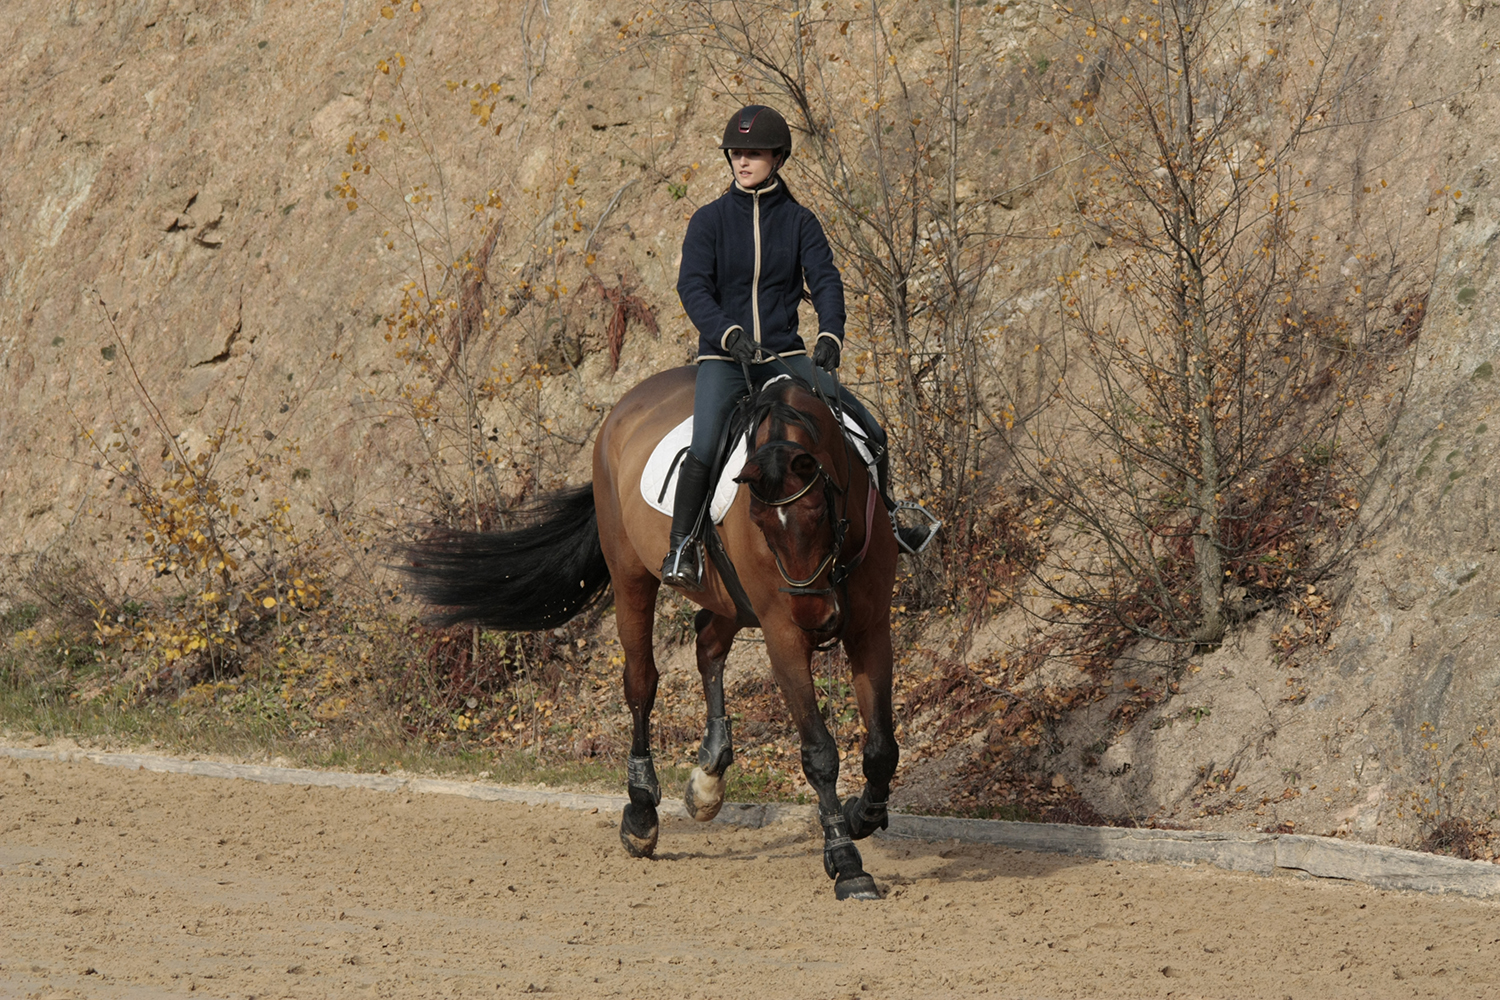 Photographie prise par Horse Development lors d'un stage d'entraînement pour cavaliers de saut d'obstacles, jument et sa cavalière au galop